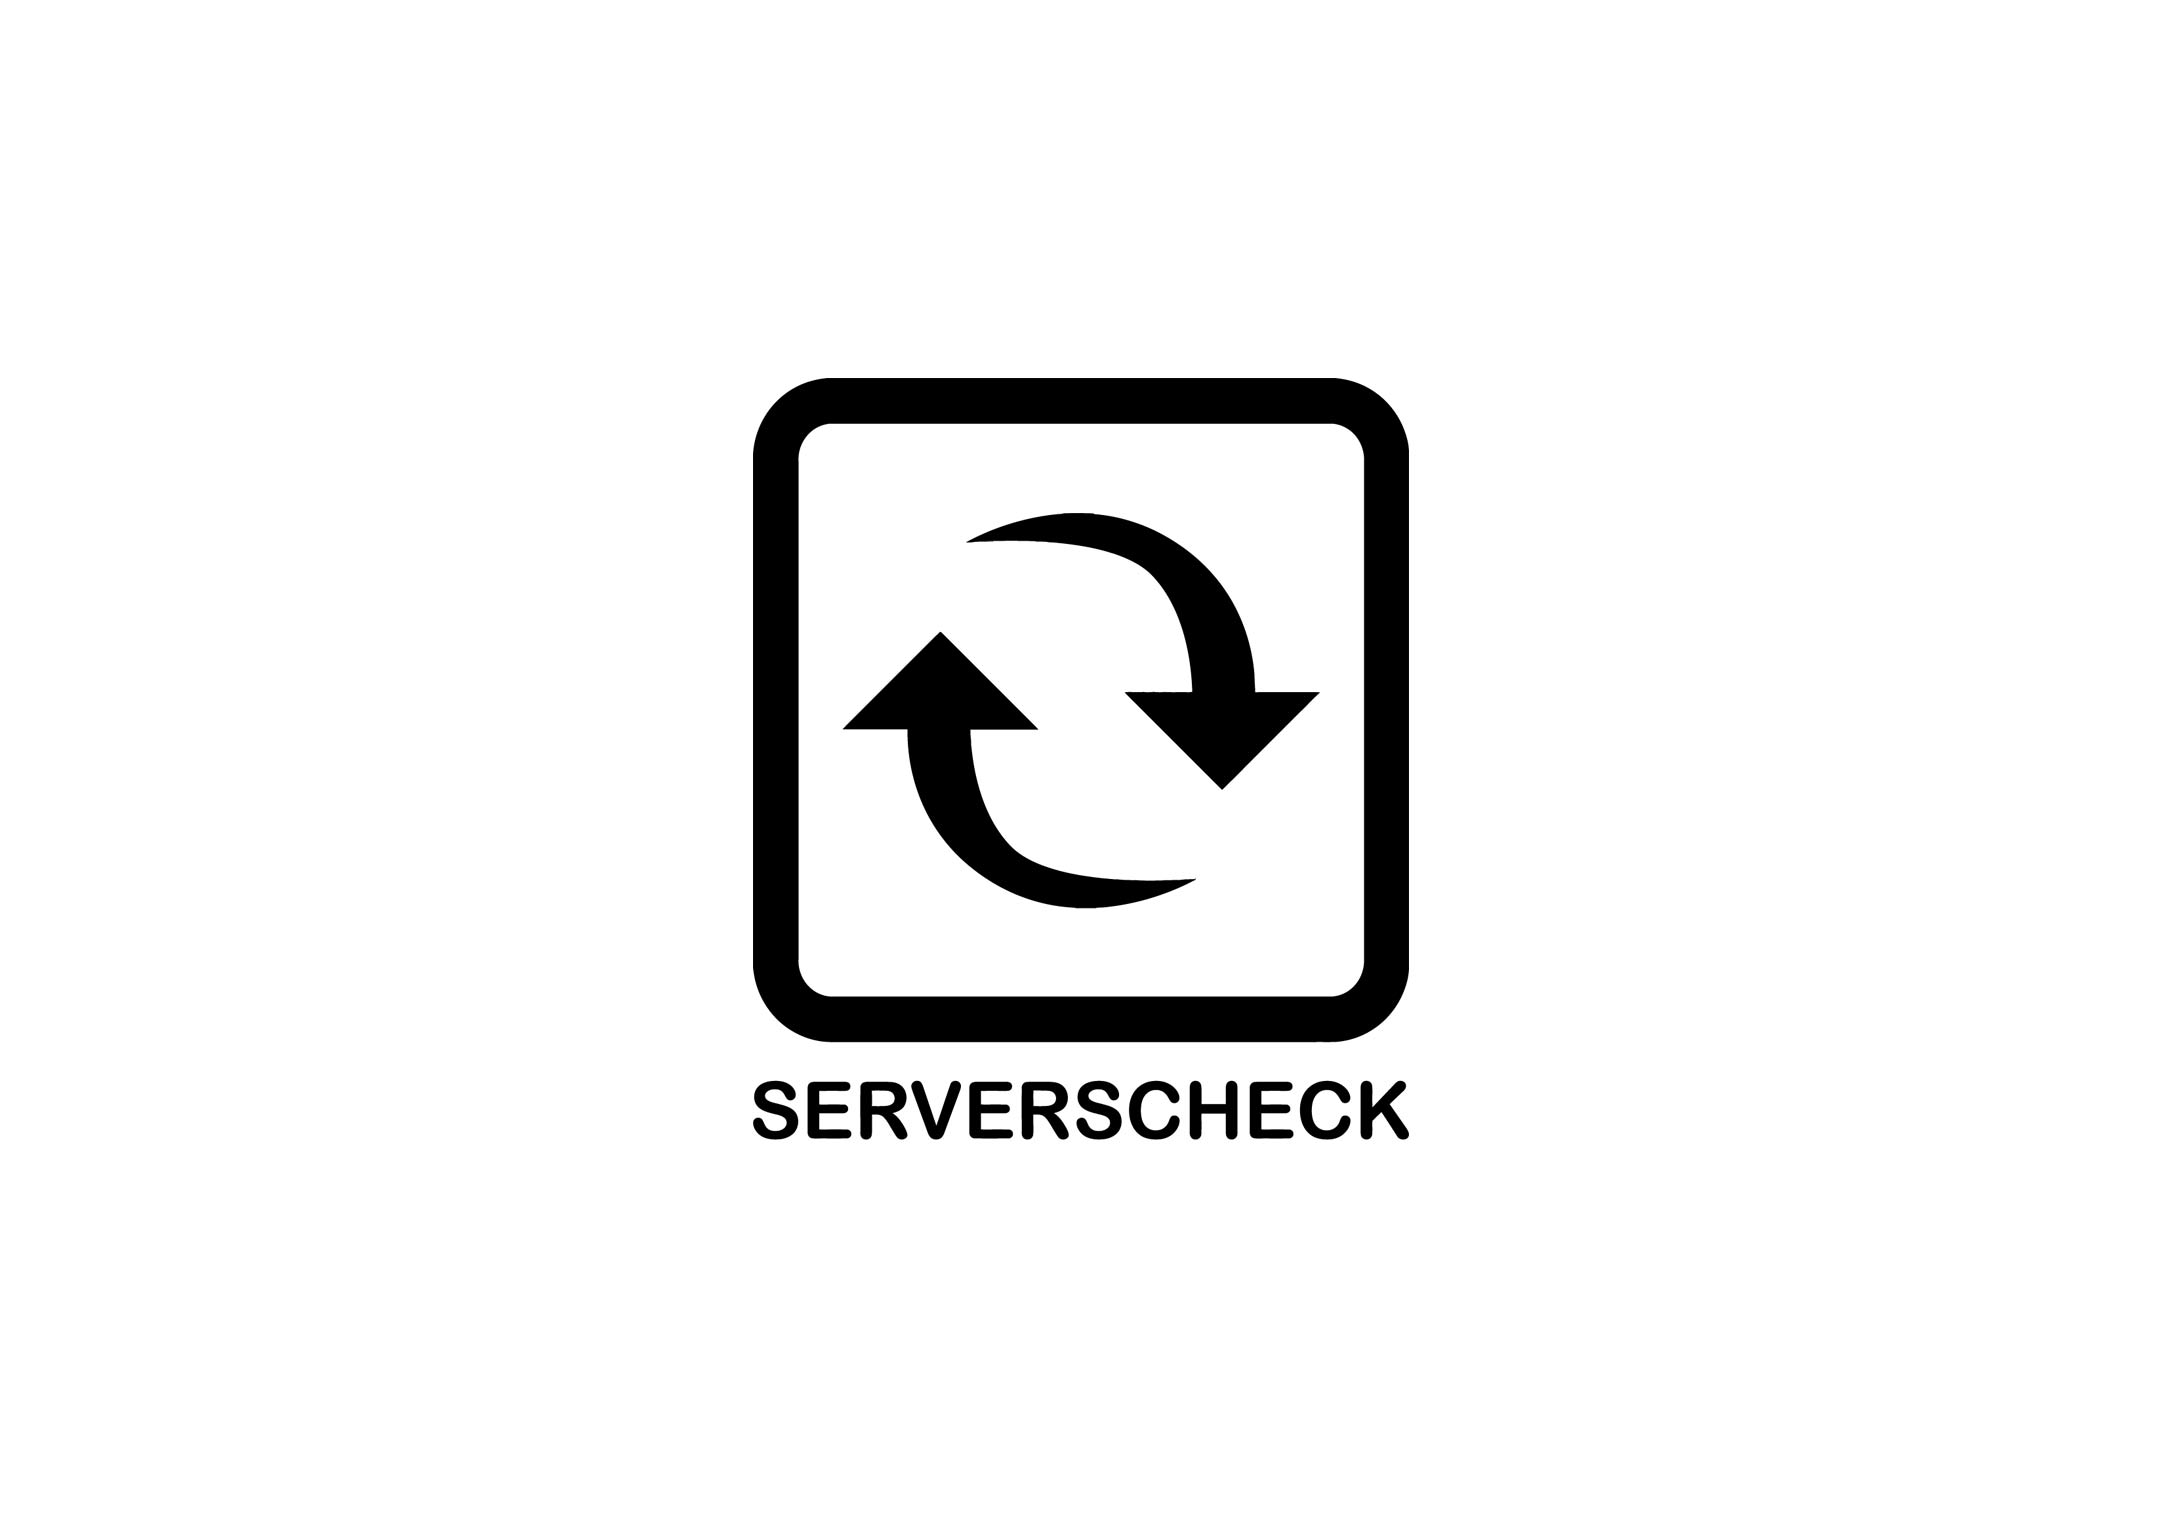 C-Server-check-logos